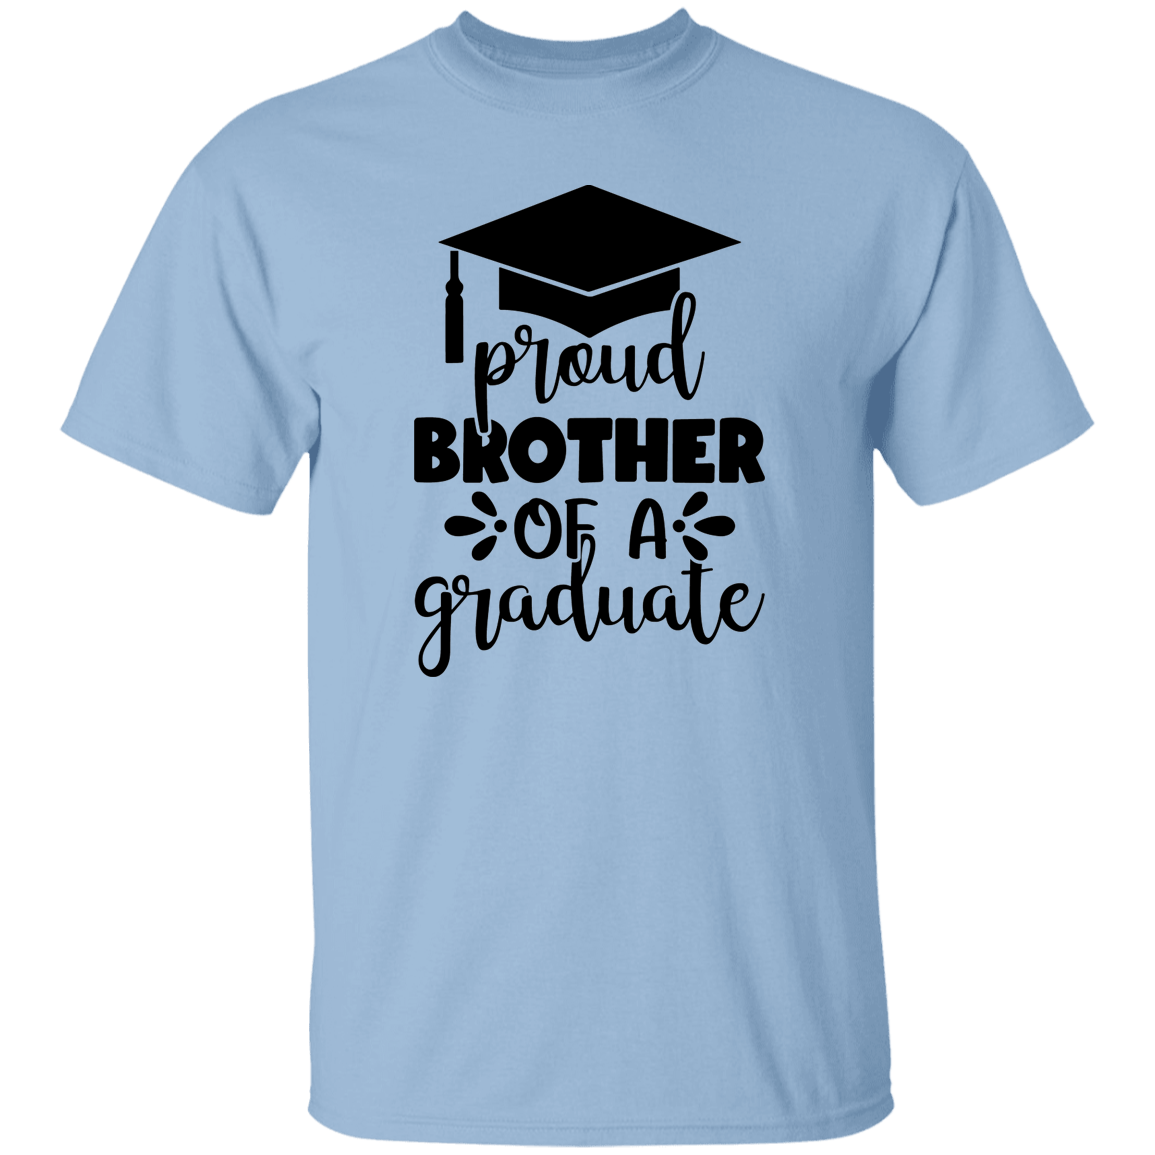 Proud BrotherT-Shirt